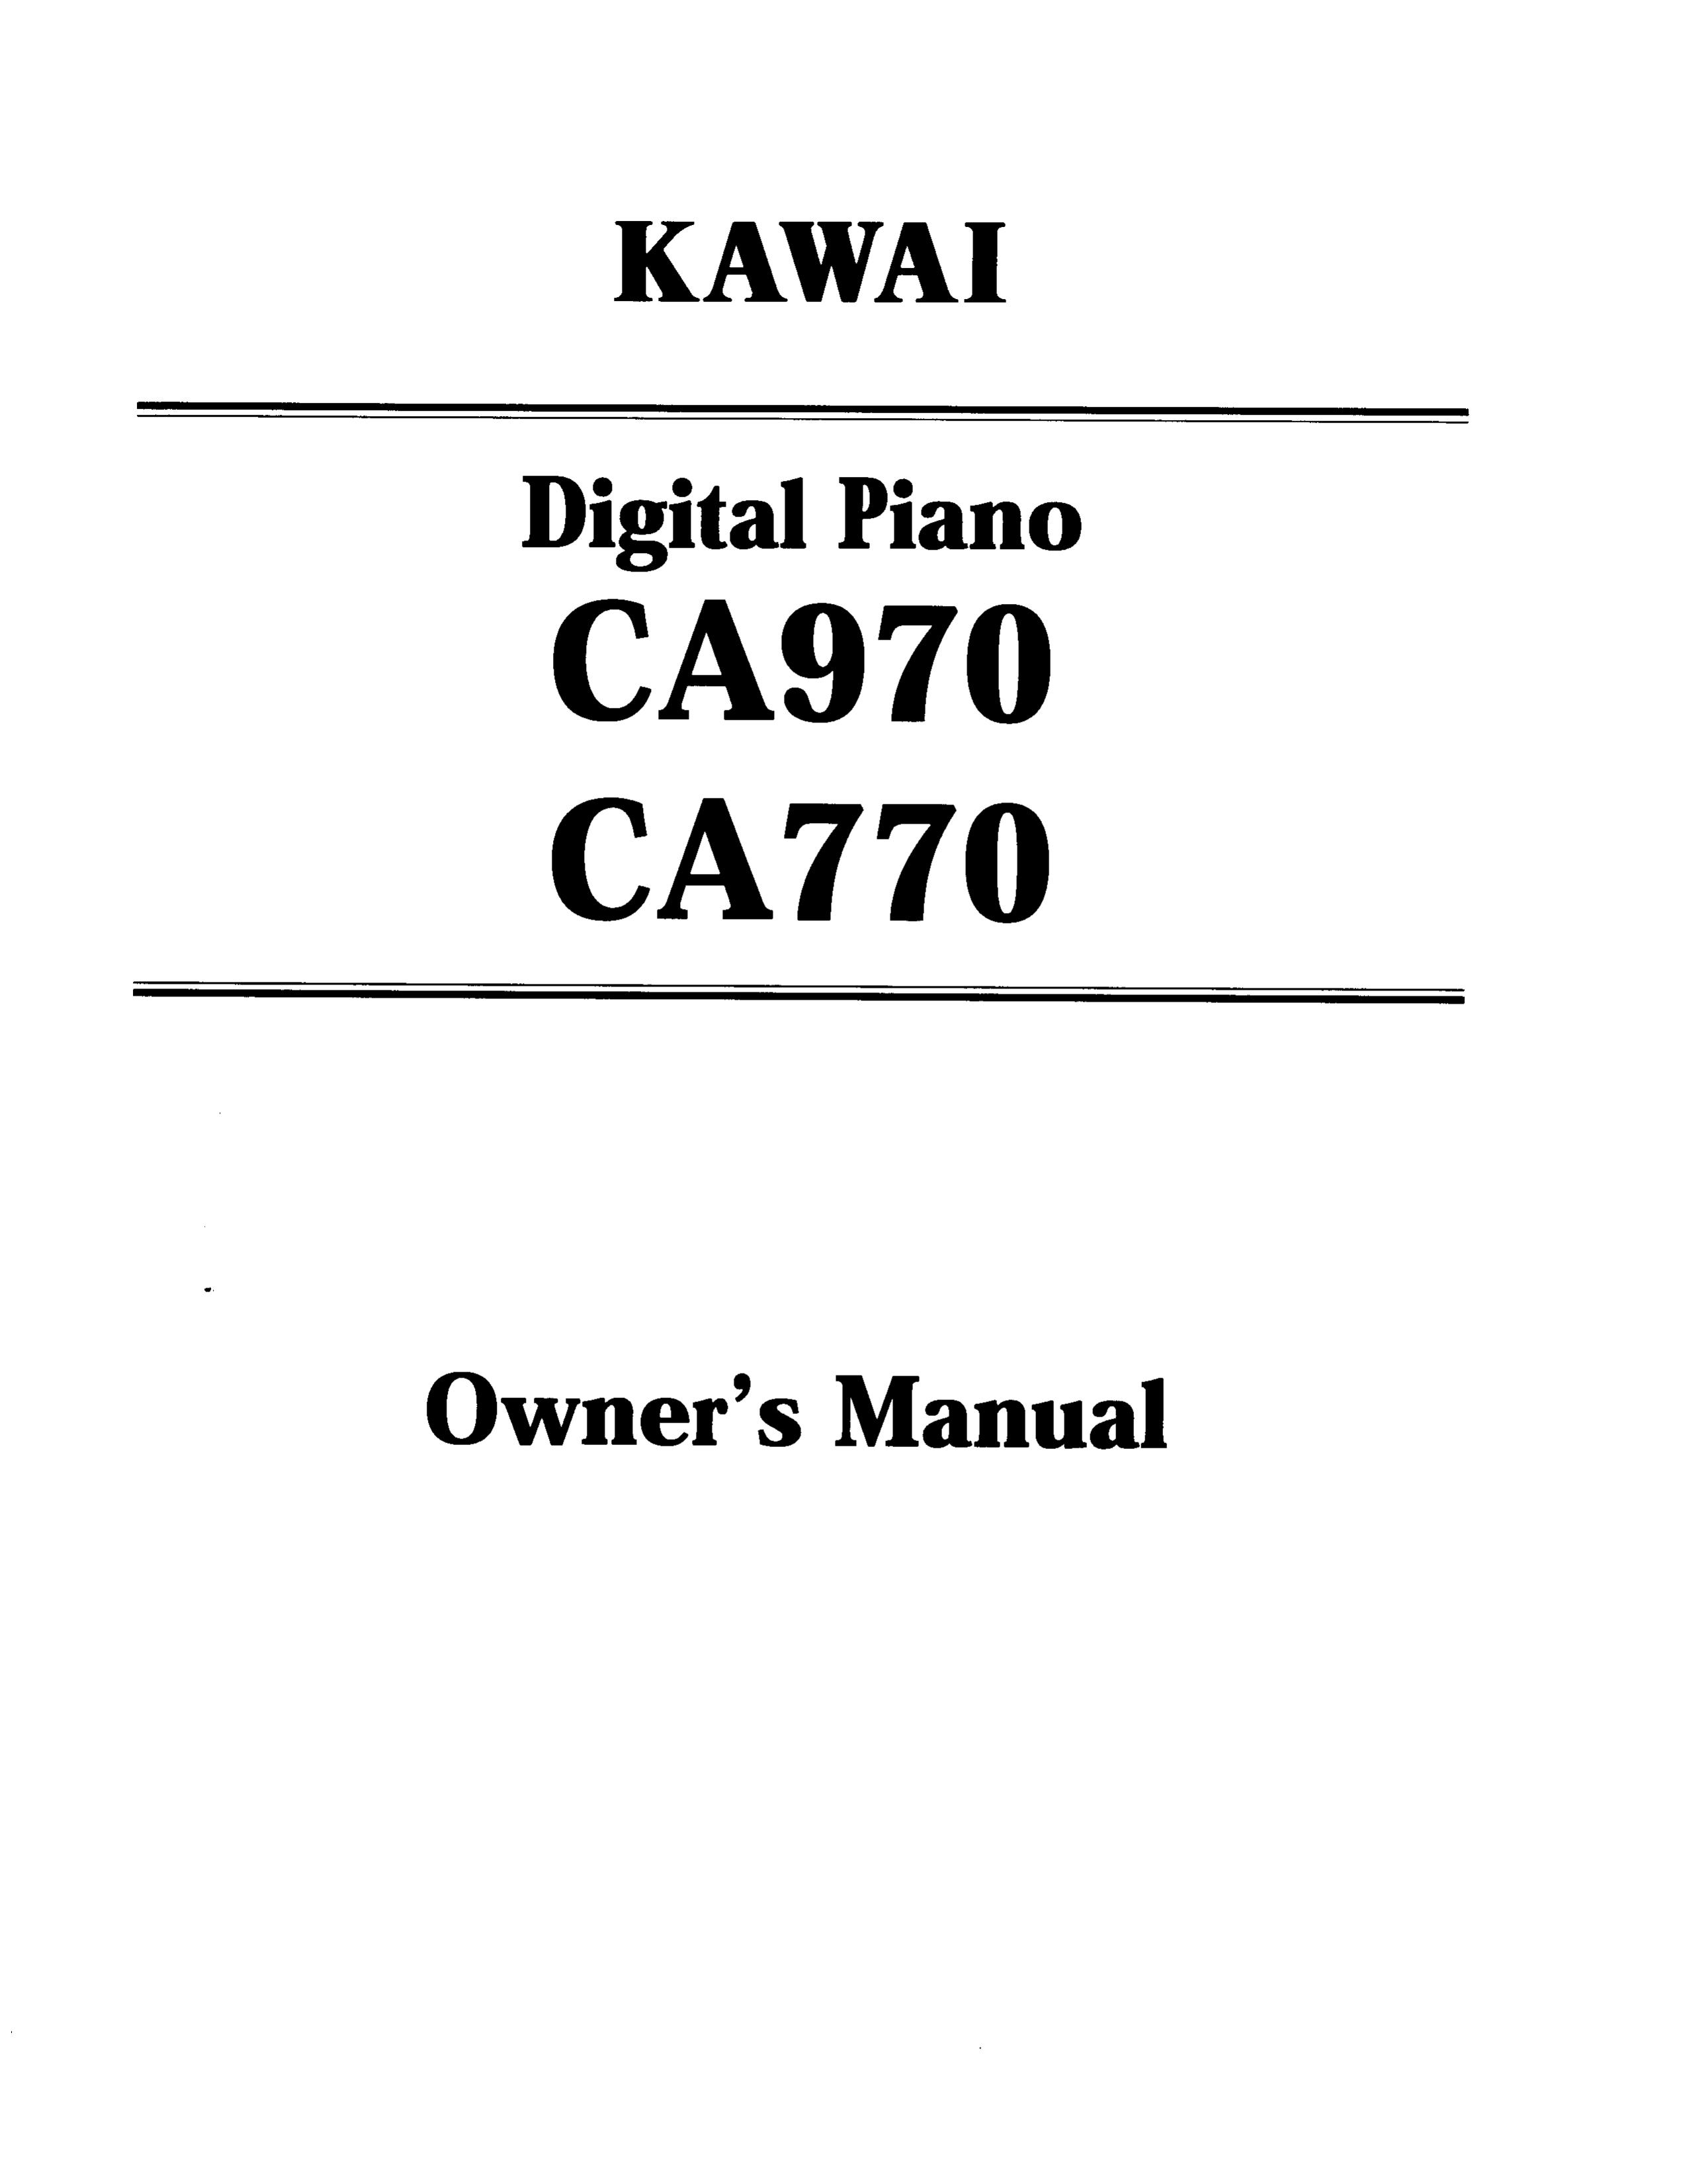 Kawai CA970 Electronic Keyboard User Manual